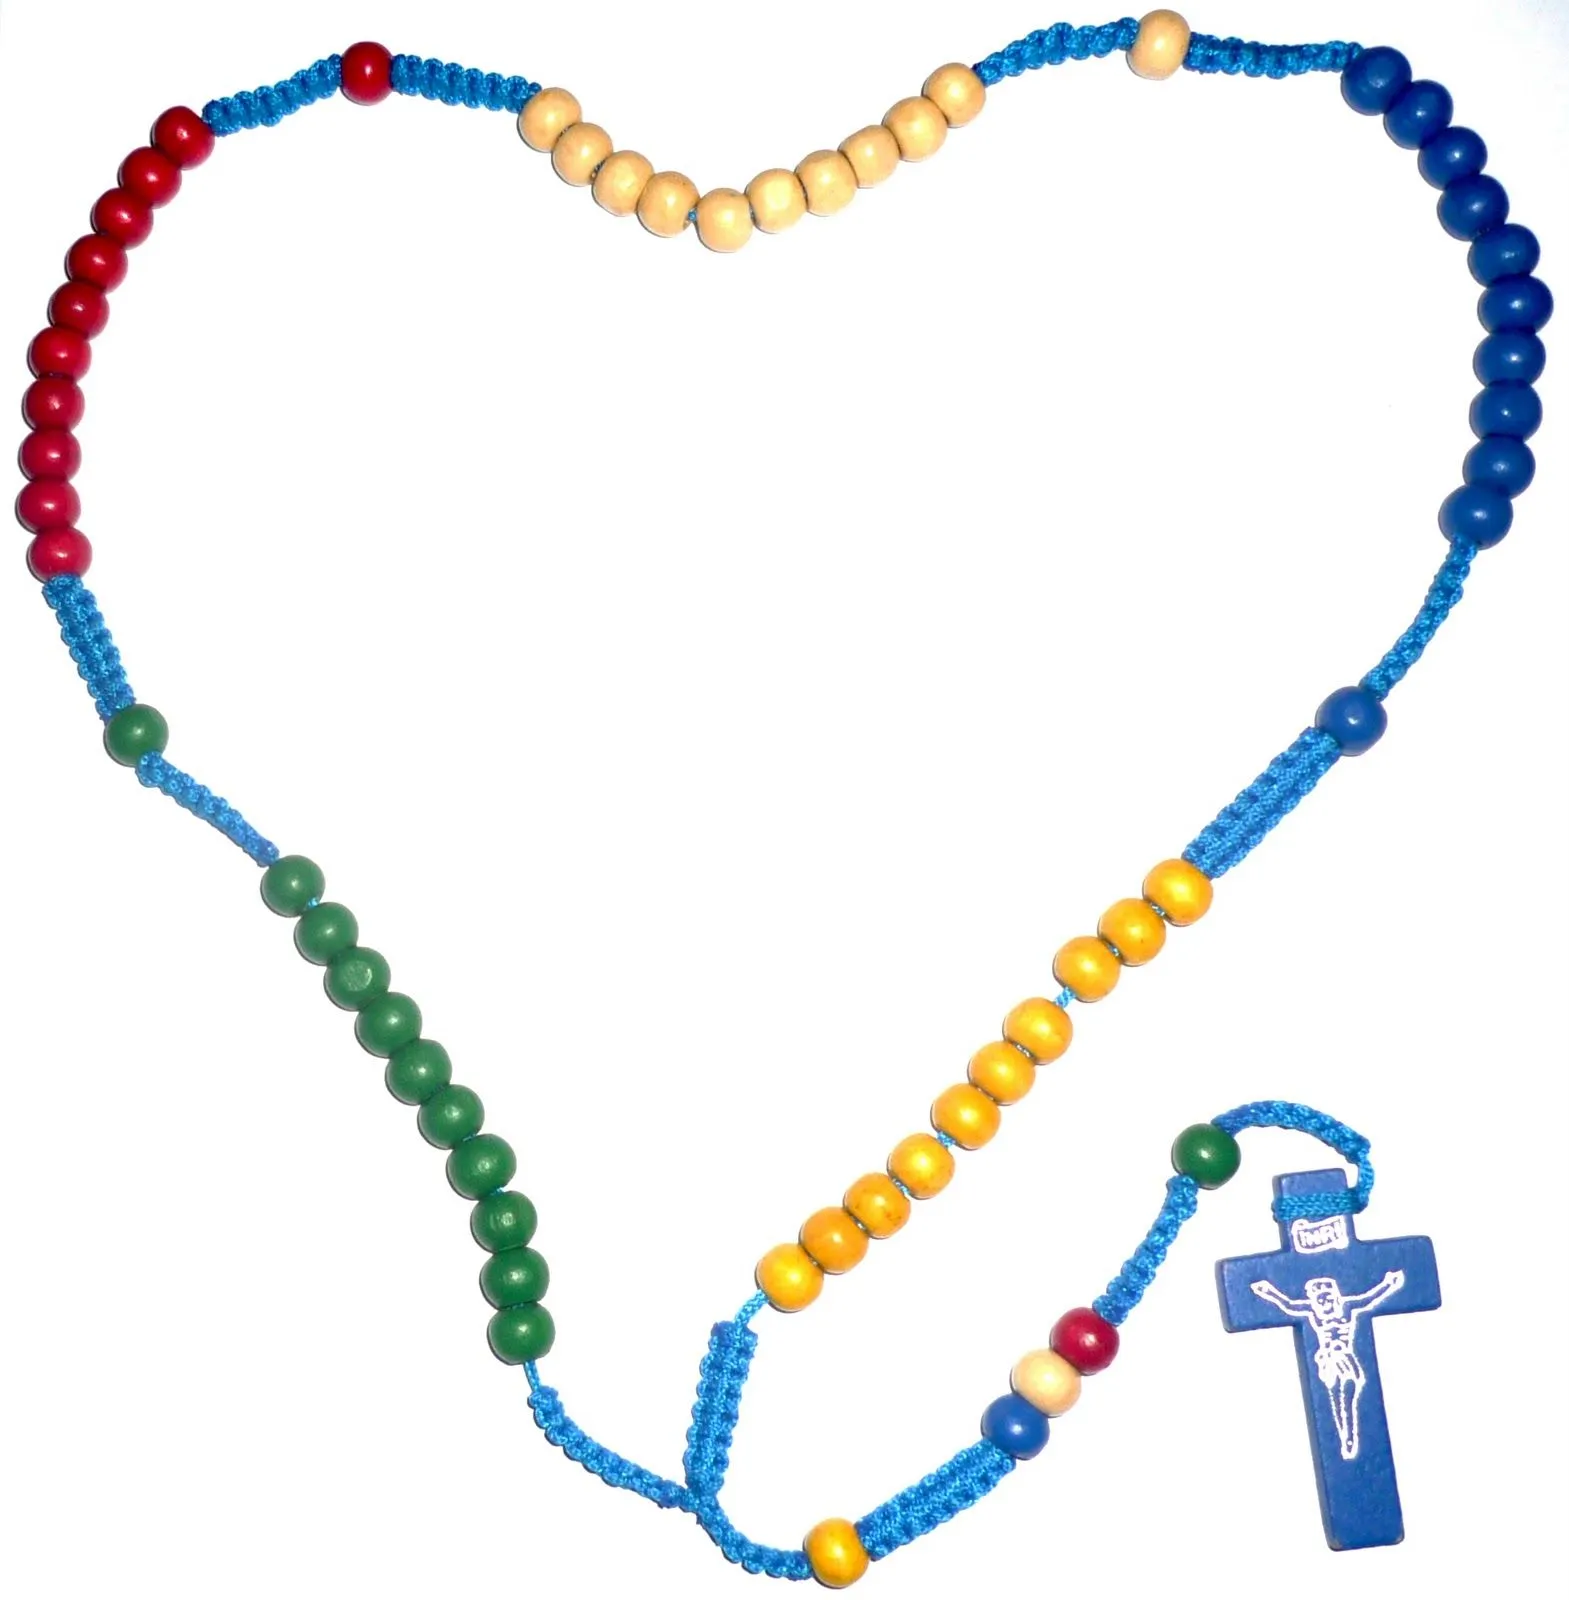 Image de el rosario misionero - Imagui